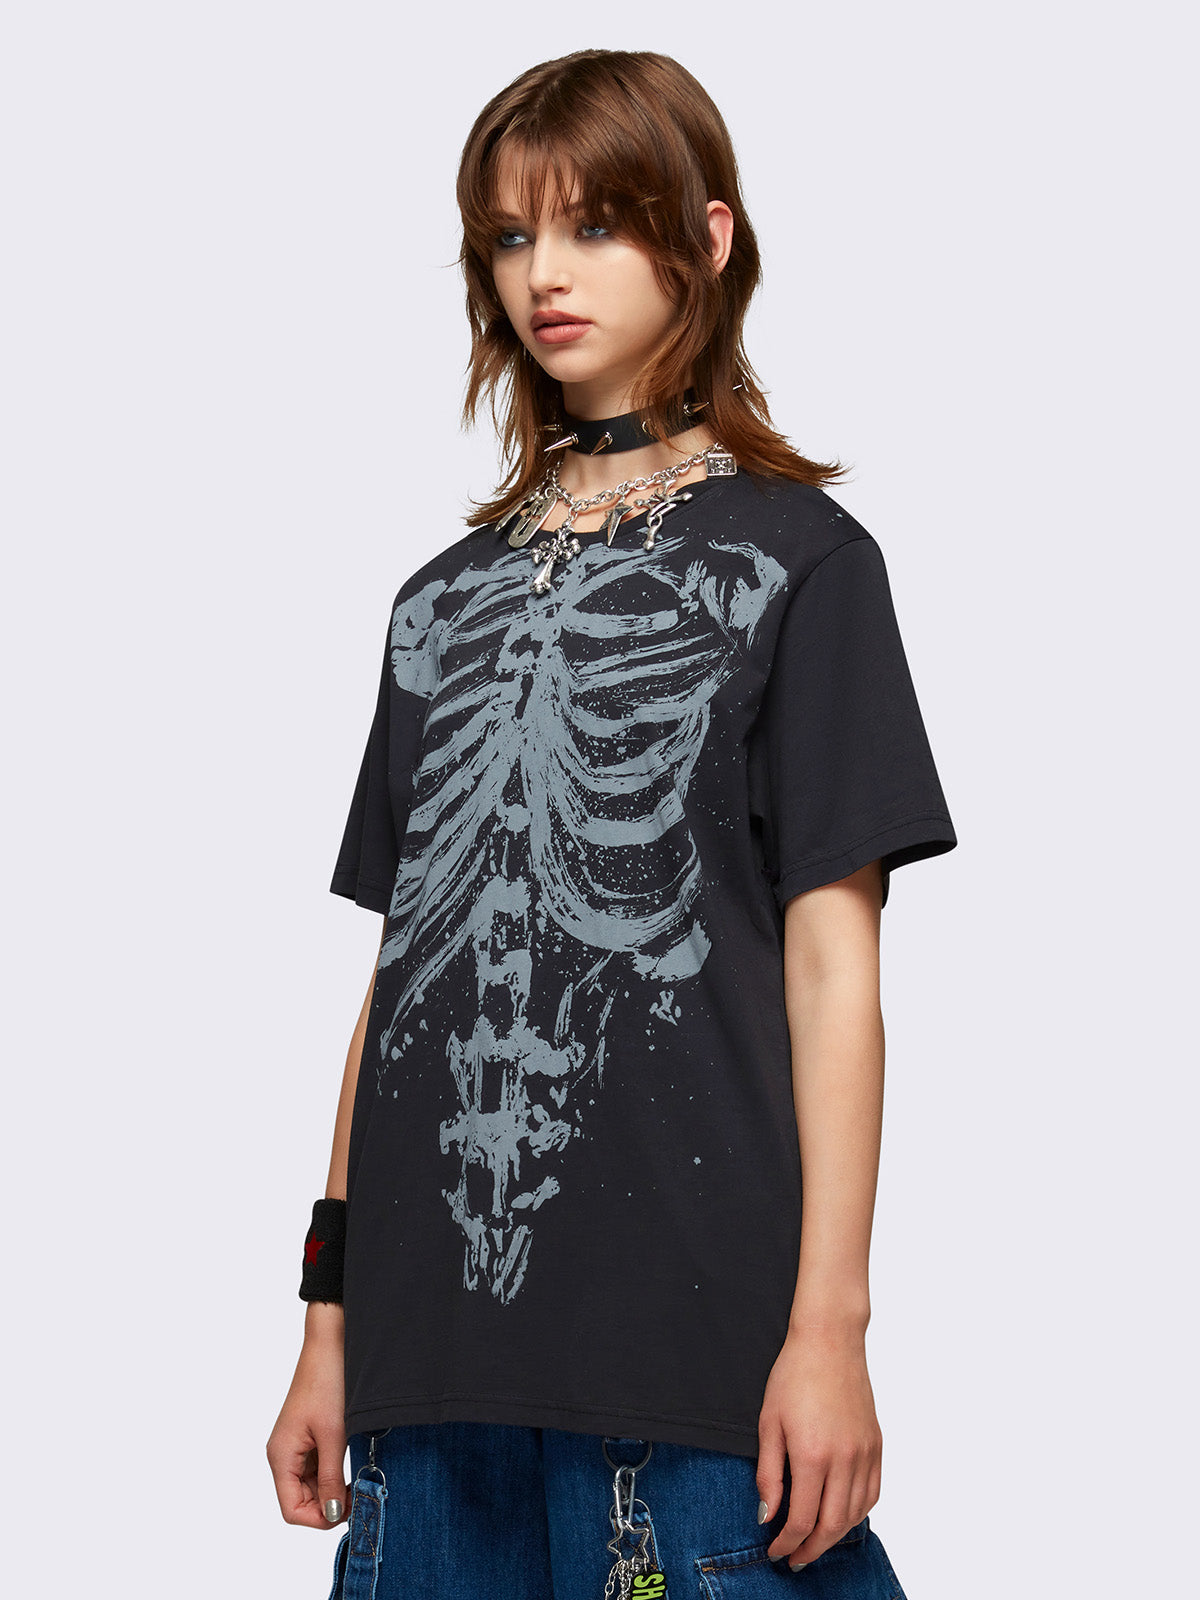 Shadowed Bones Black Graphic T-shirt